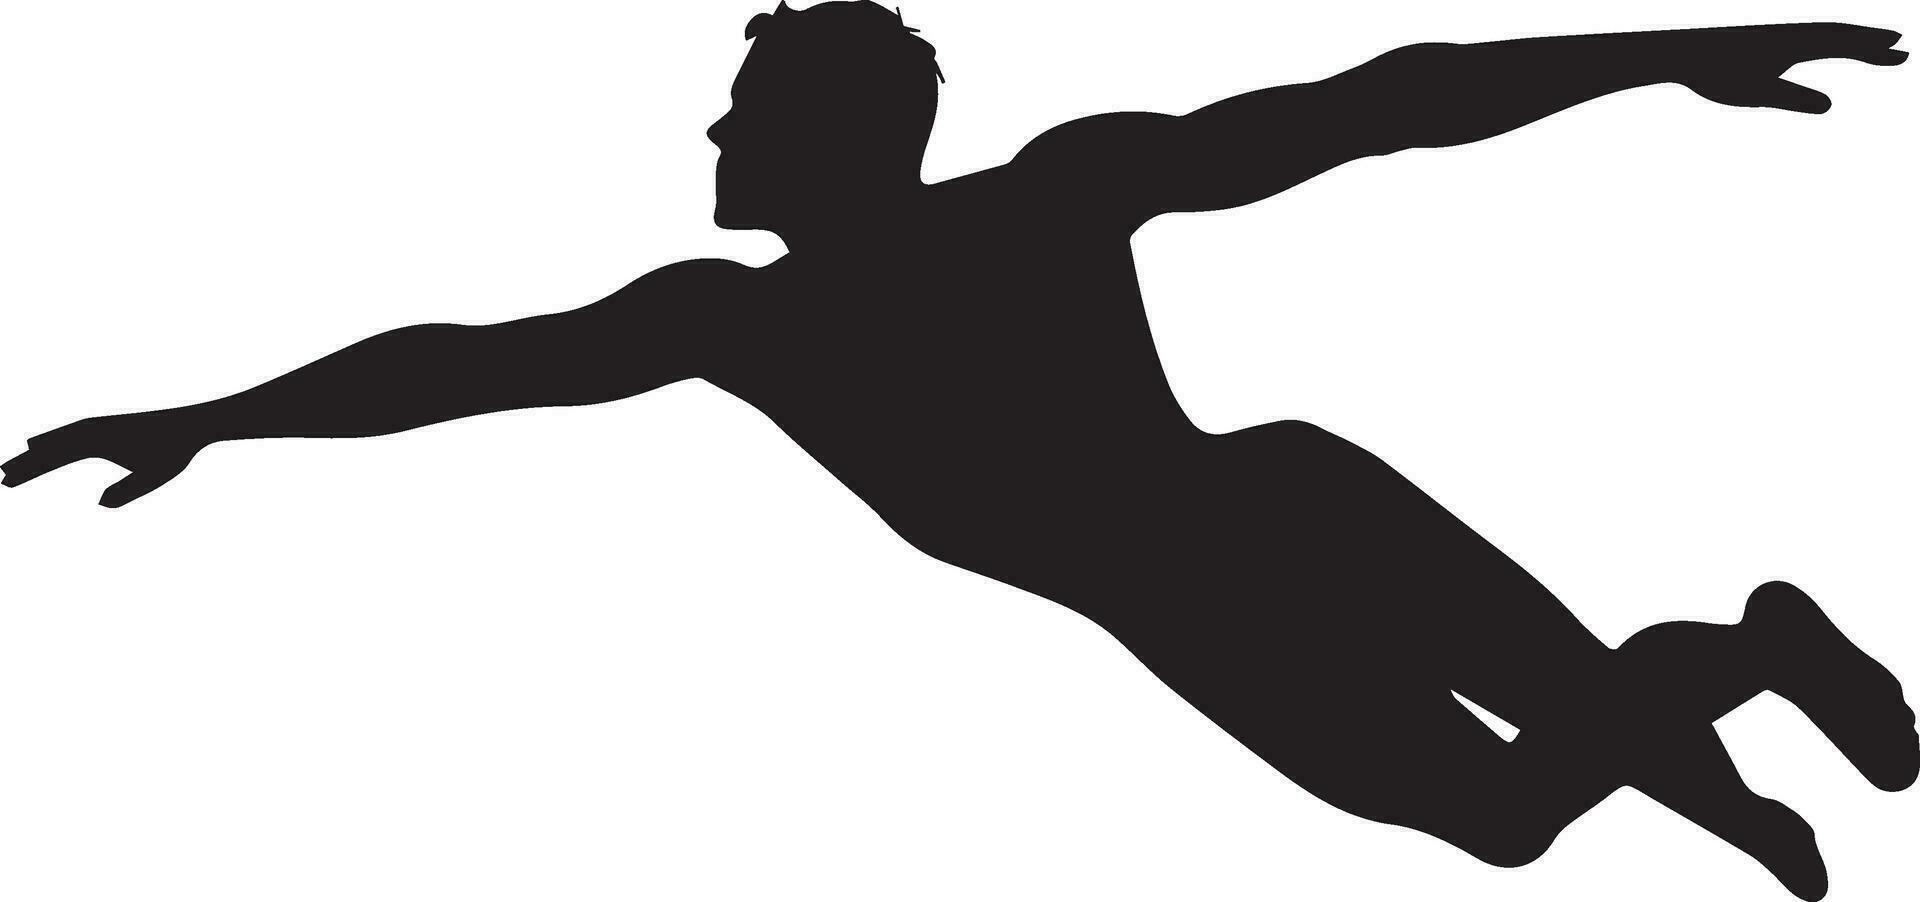 un' nuotatore nuoto posa vettore silhouette illustrazione